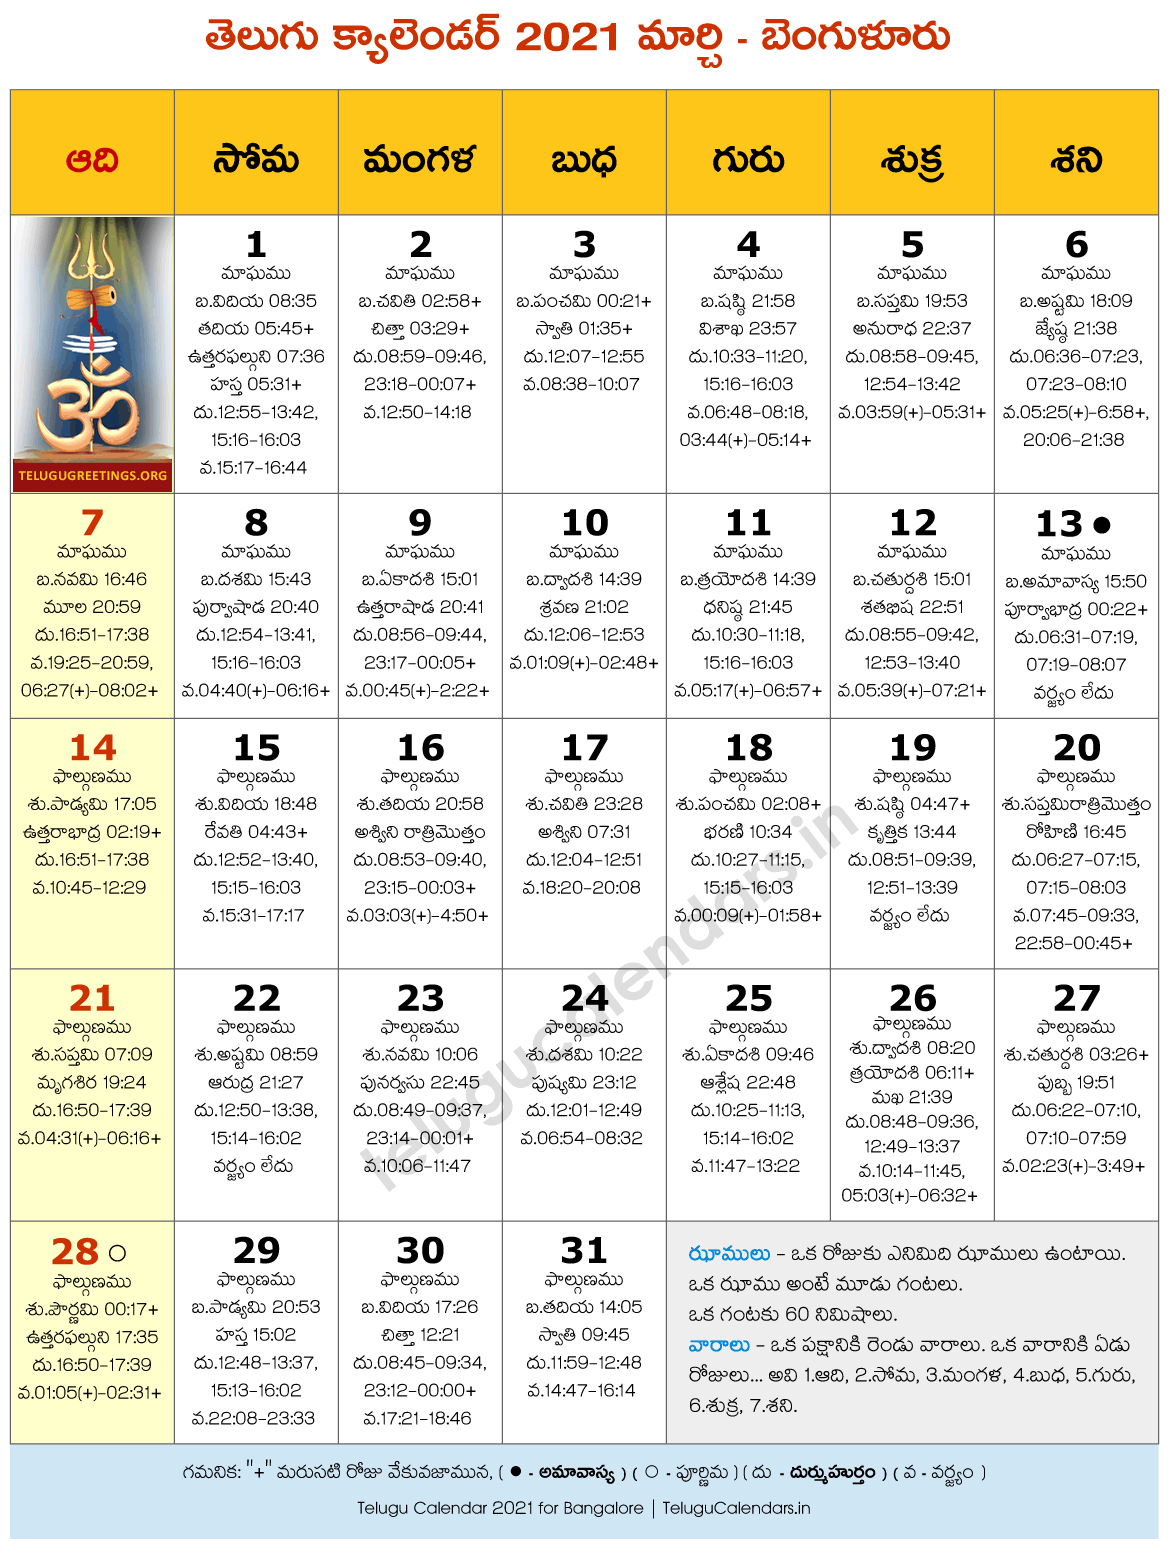 Bengaluru 2021 March Telugu Calendar - 2023 Telugu Calendar PDF